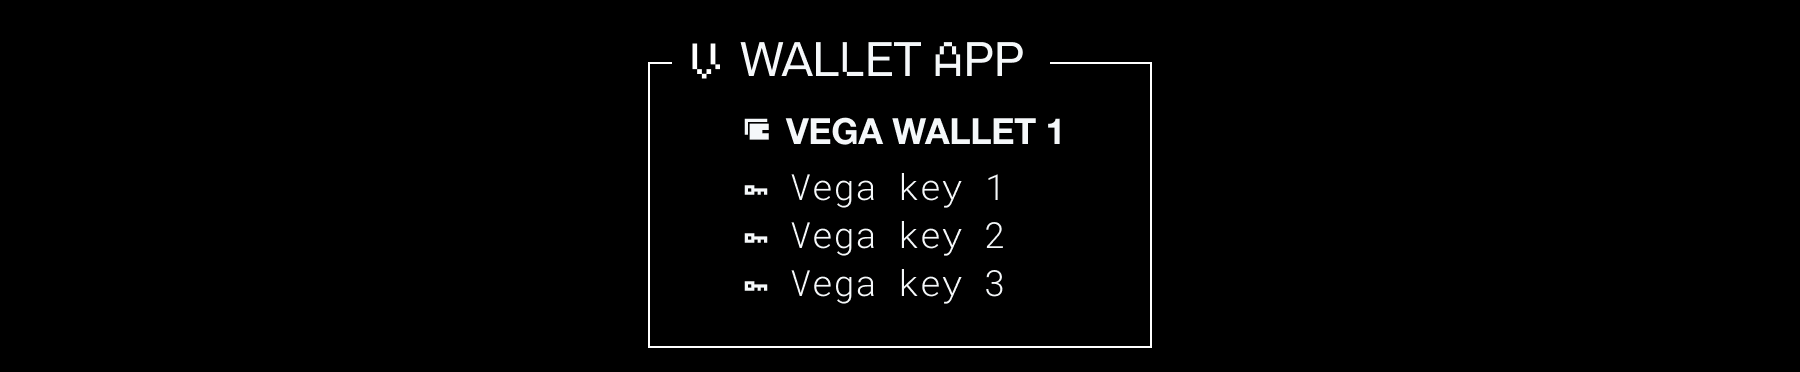 Single wallet with multiple keys